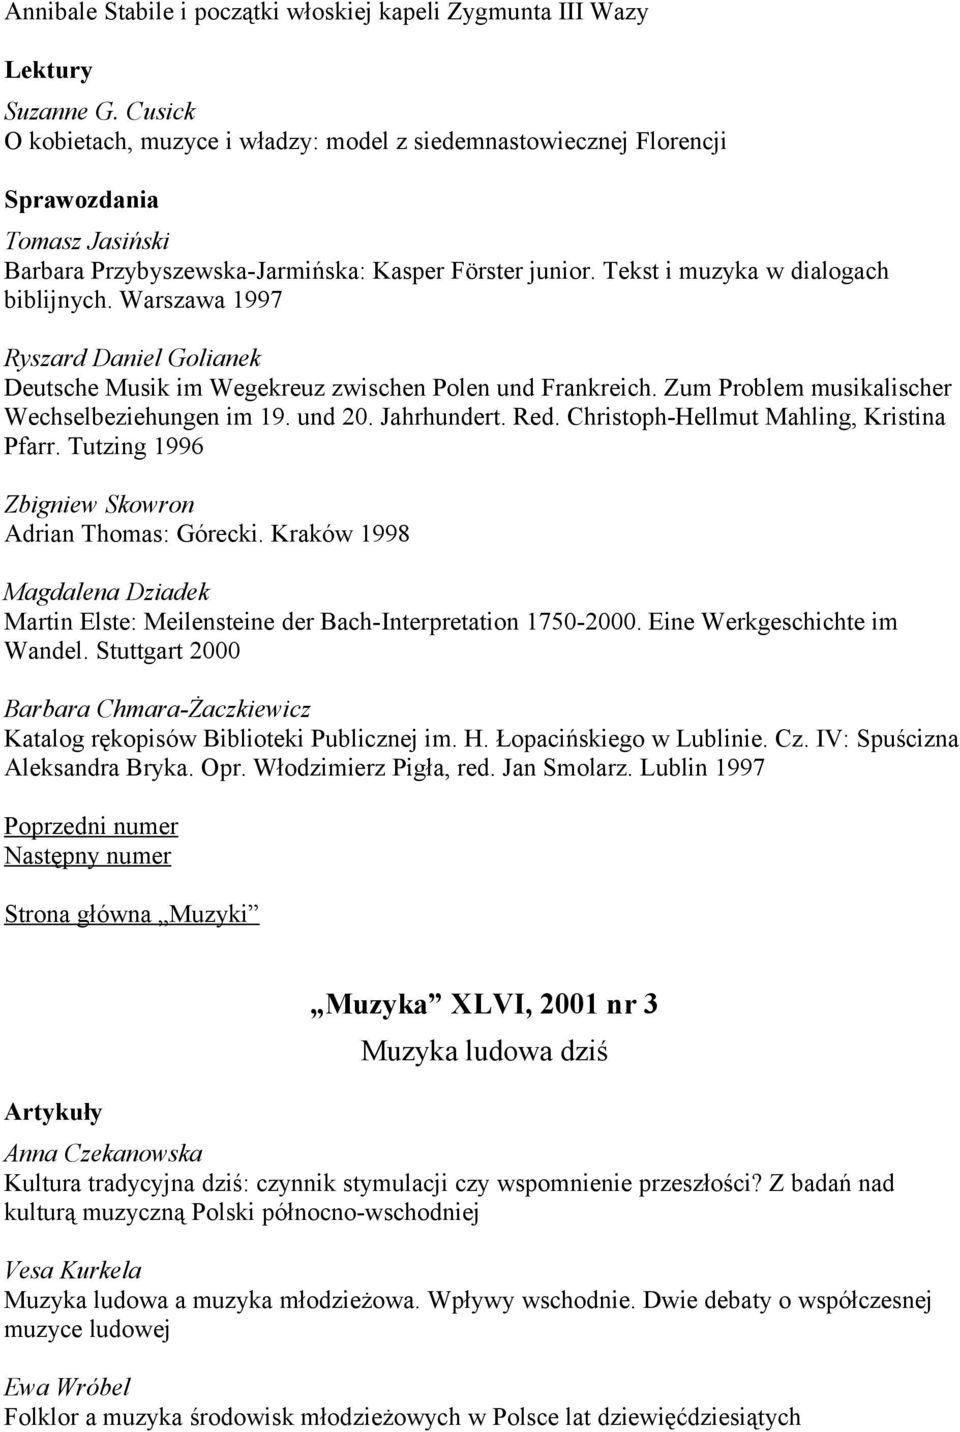 Warszawa 1997 Ryszard Daniel Golianek Deutsche Musik im Wegekreuz zwischen Polen und Frankreich. Zum Problem musikalischer Wechselbeziehungen im 19. und 20. Jahrhundert. Red.